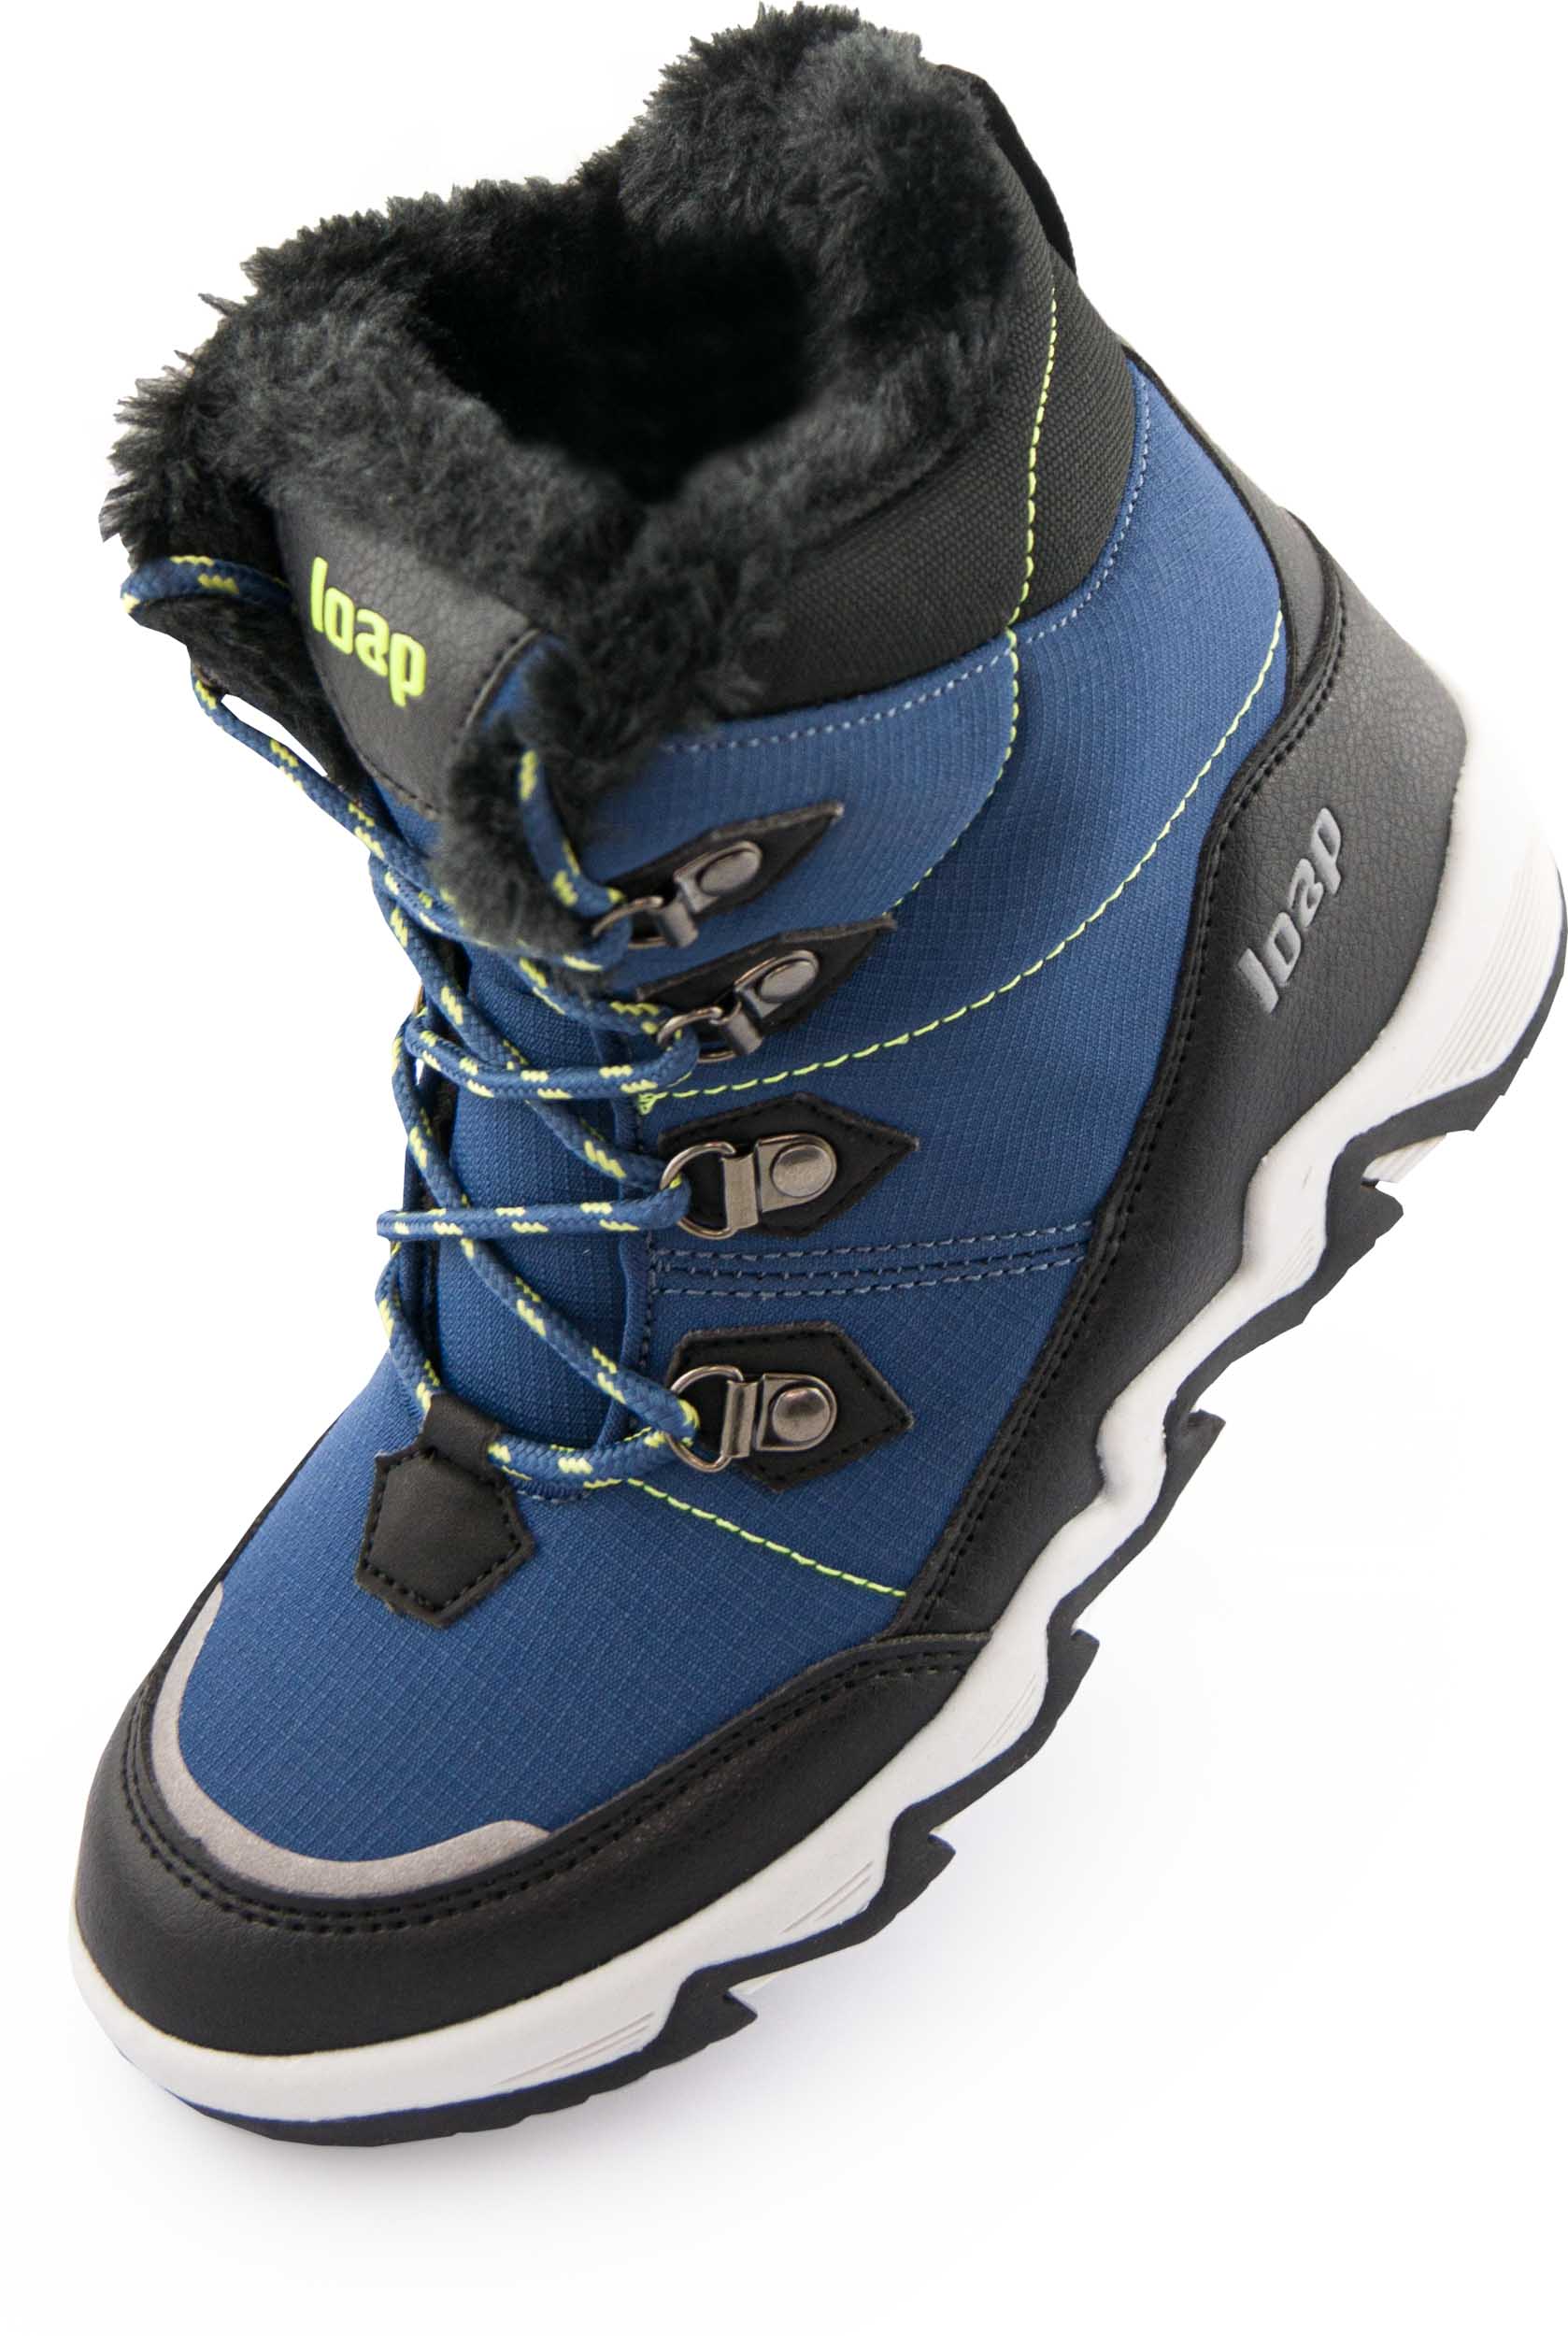 Dětské zimní boty LOAP LIMA blue|32